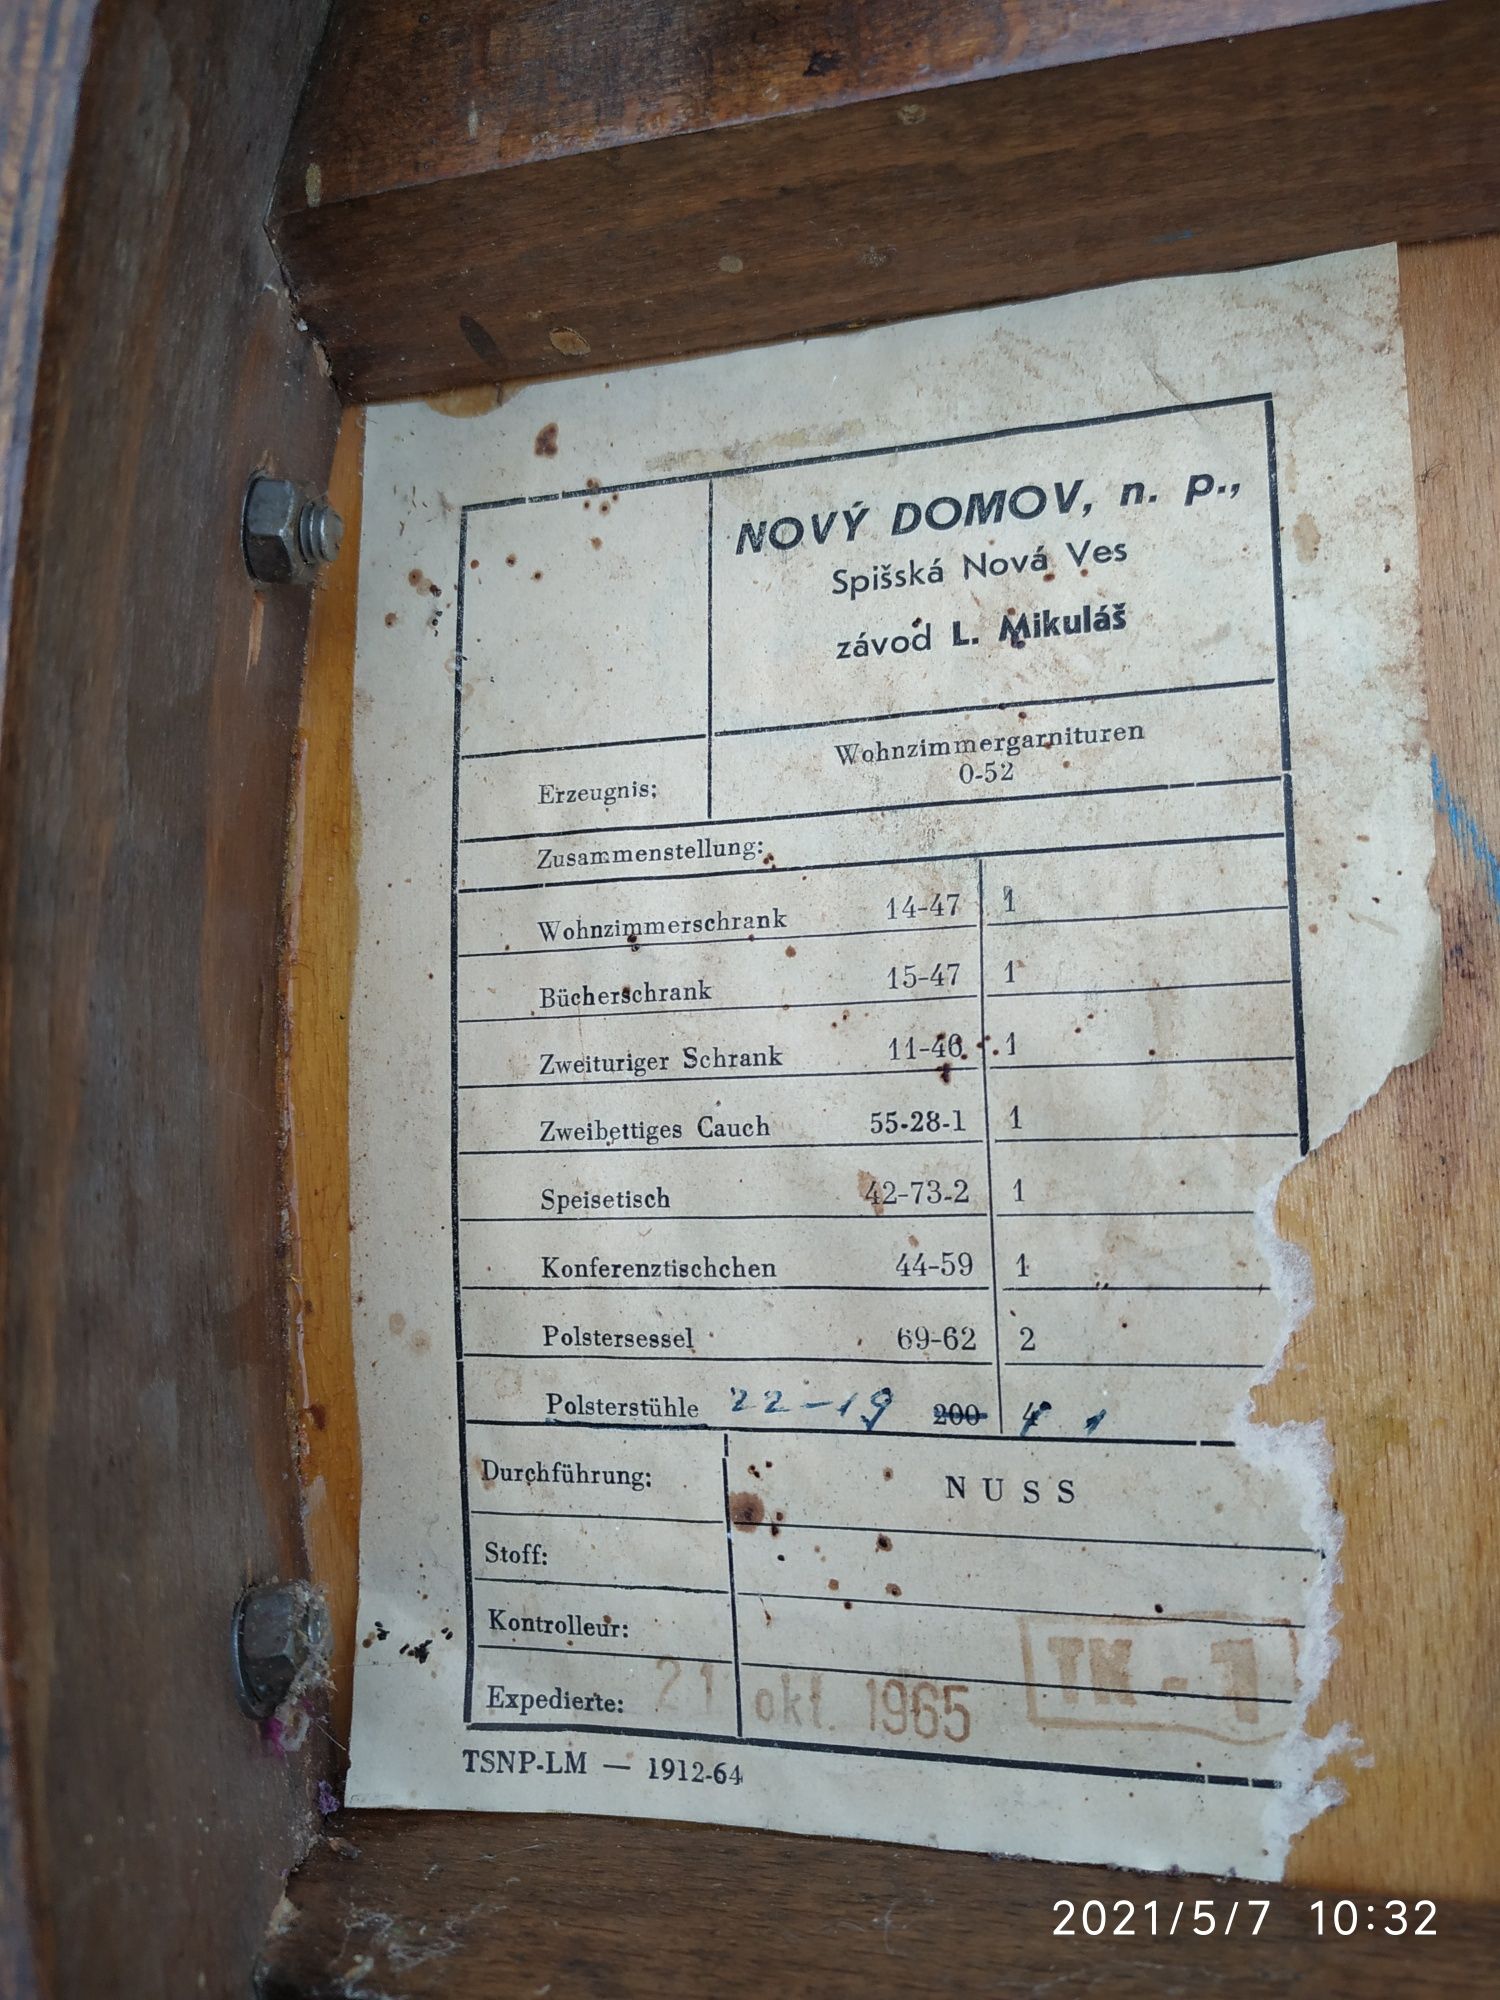 Krzesła Tatra prl loft do renowacji 1965 ROK NOVY DOMOV L. MIKULAS